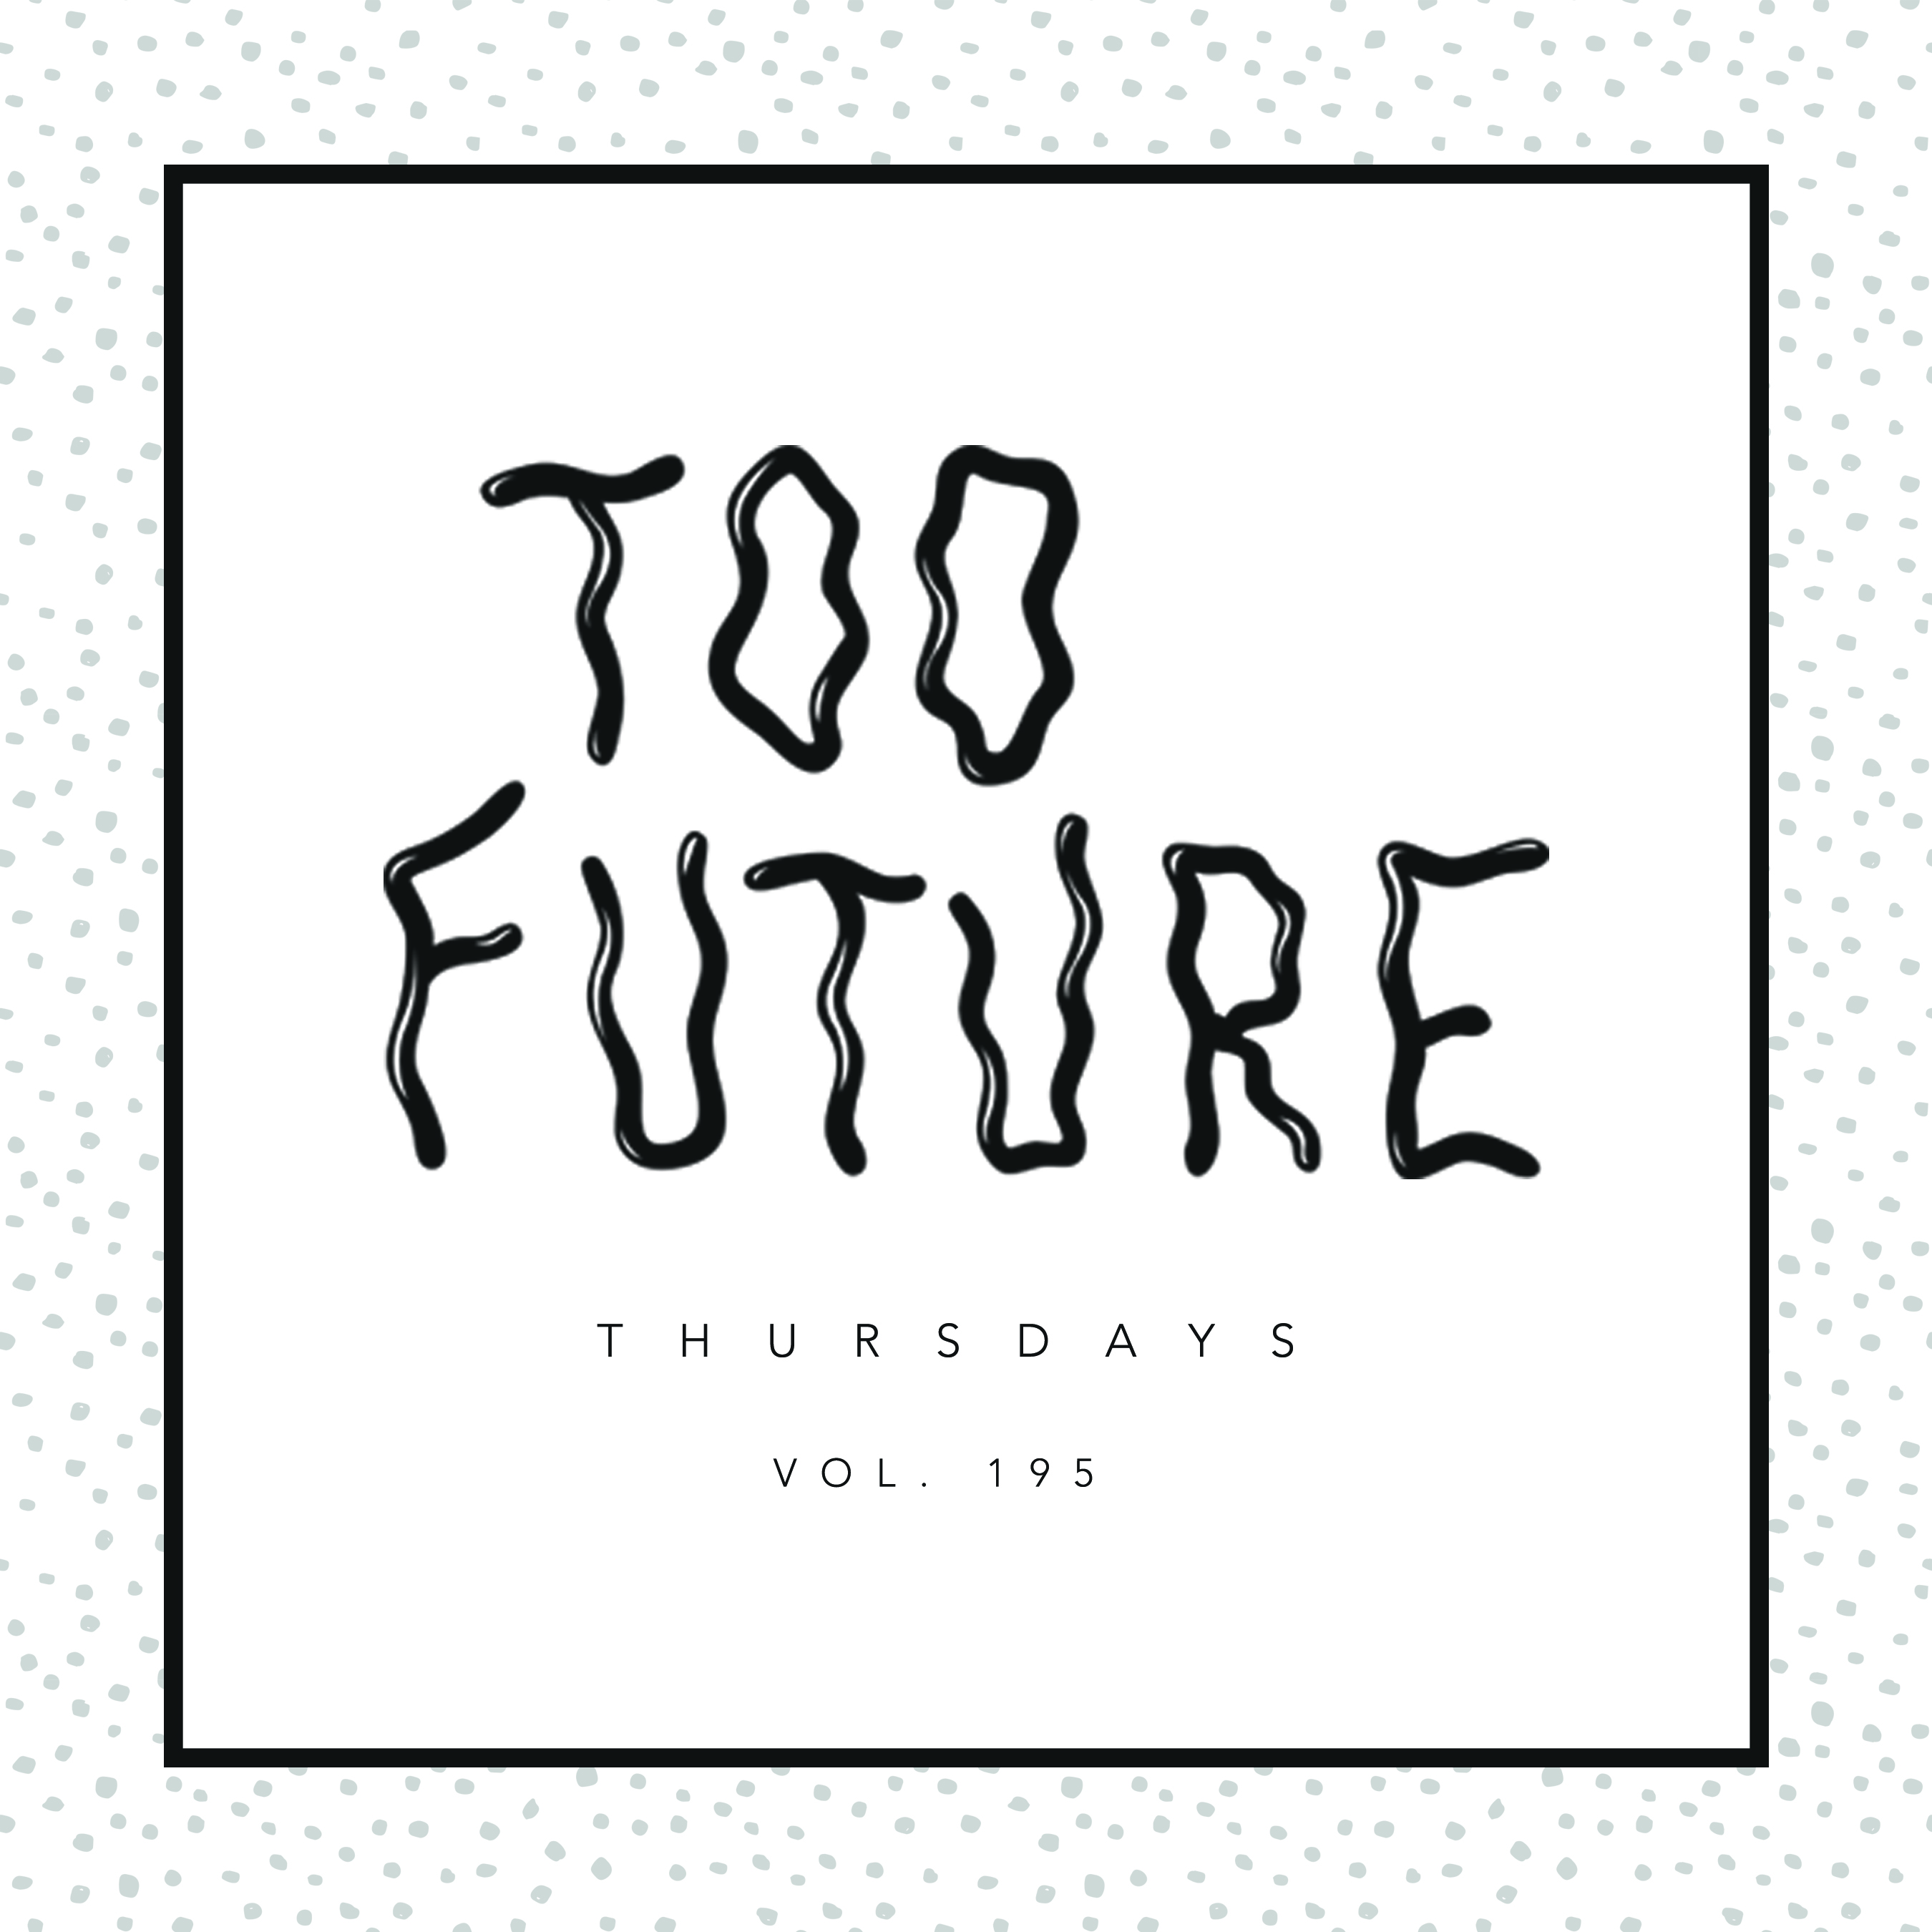 too-future-thursdays-vol-195